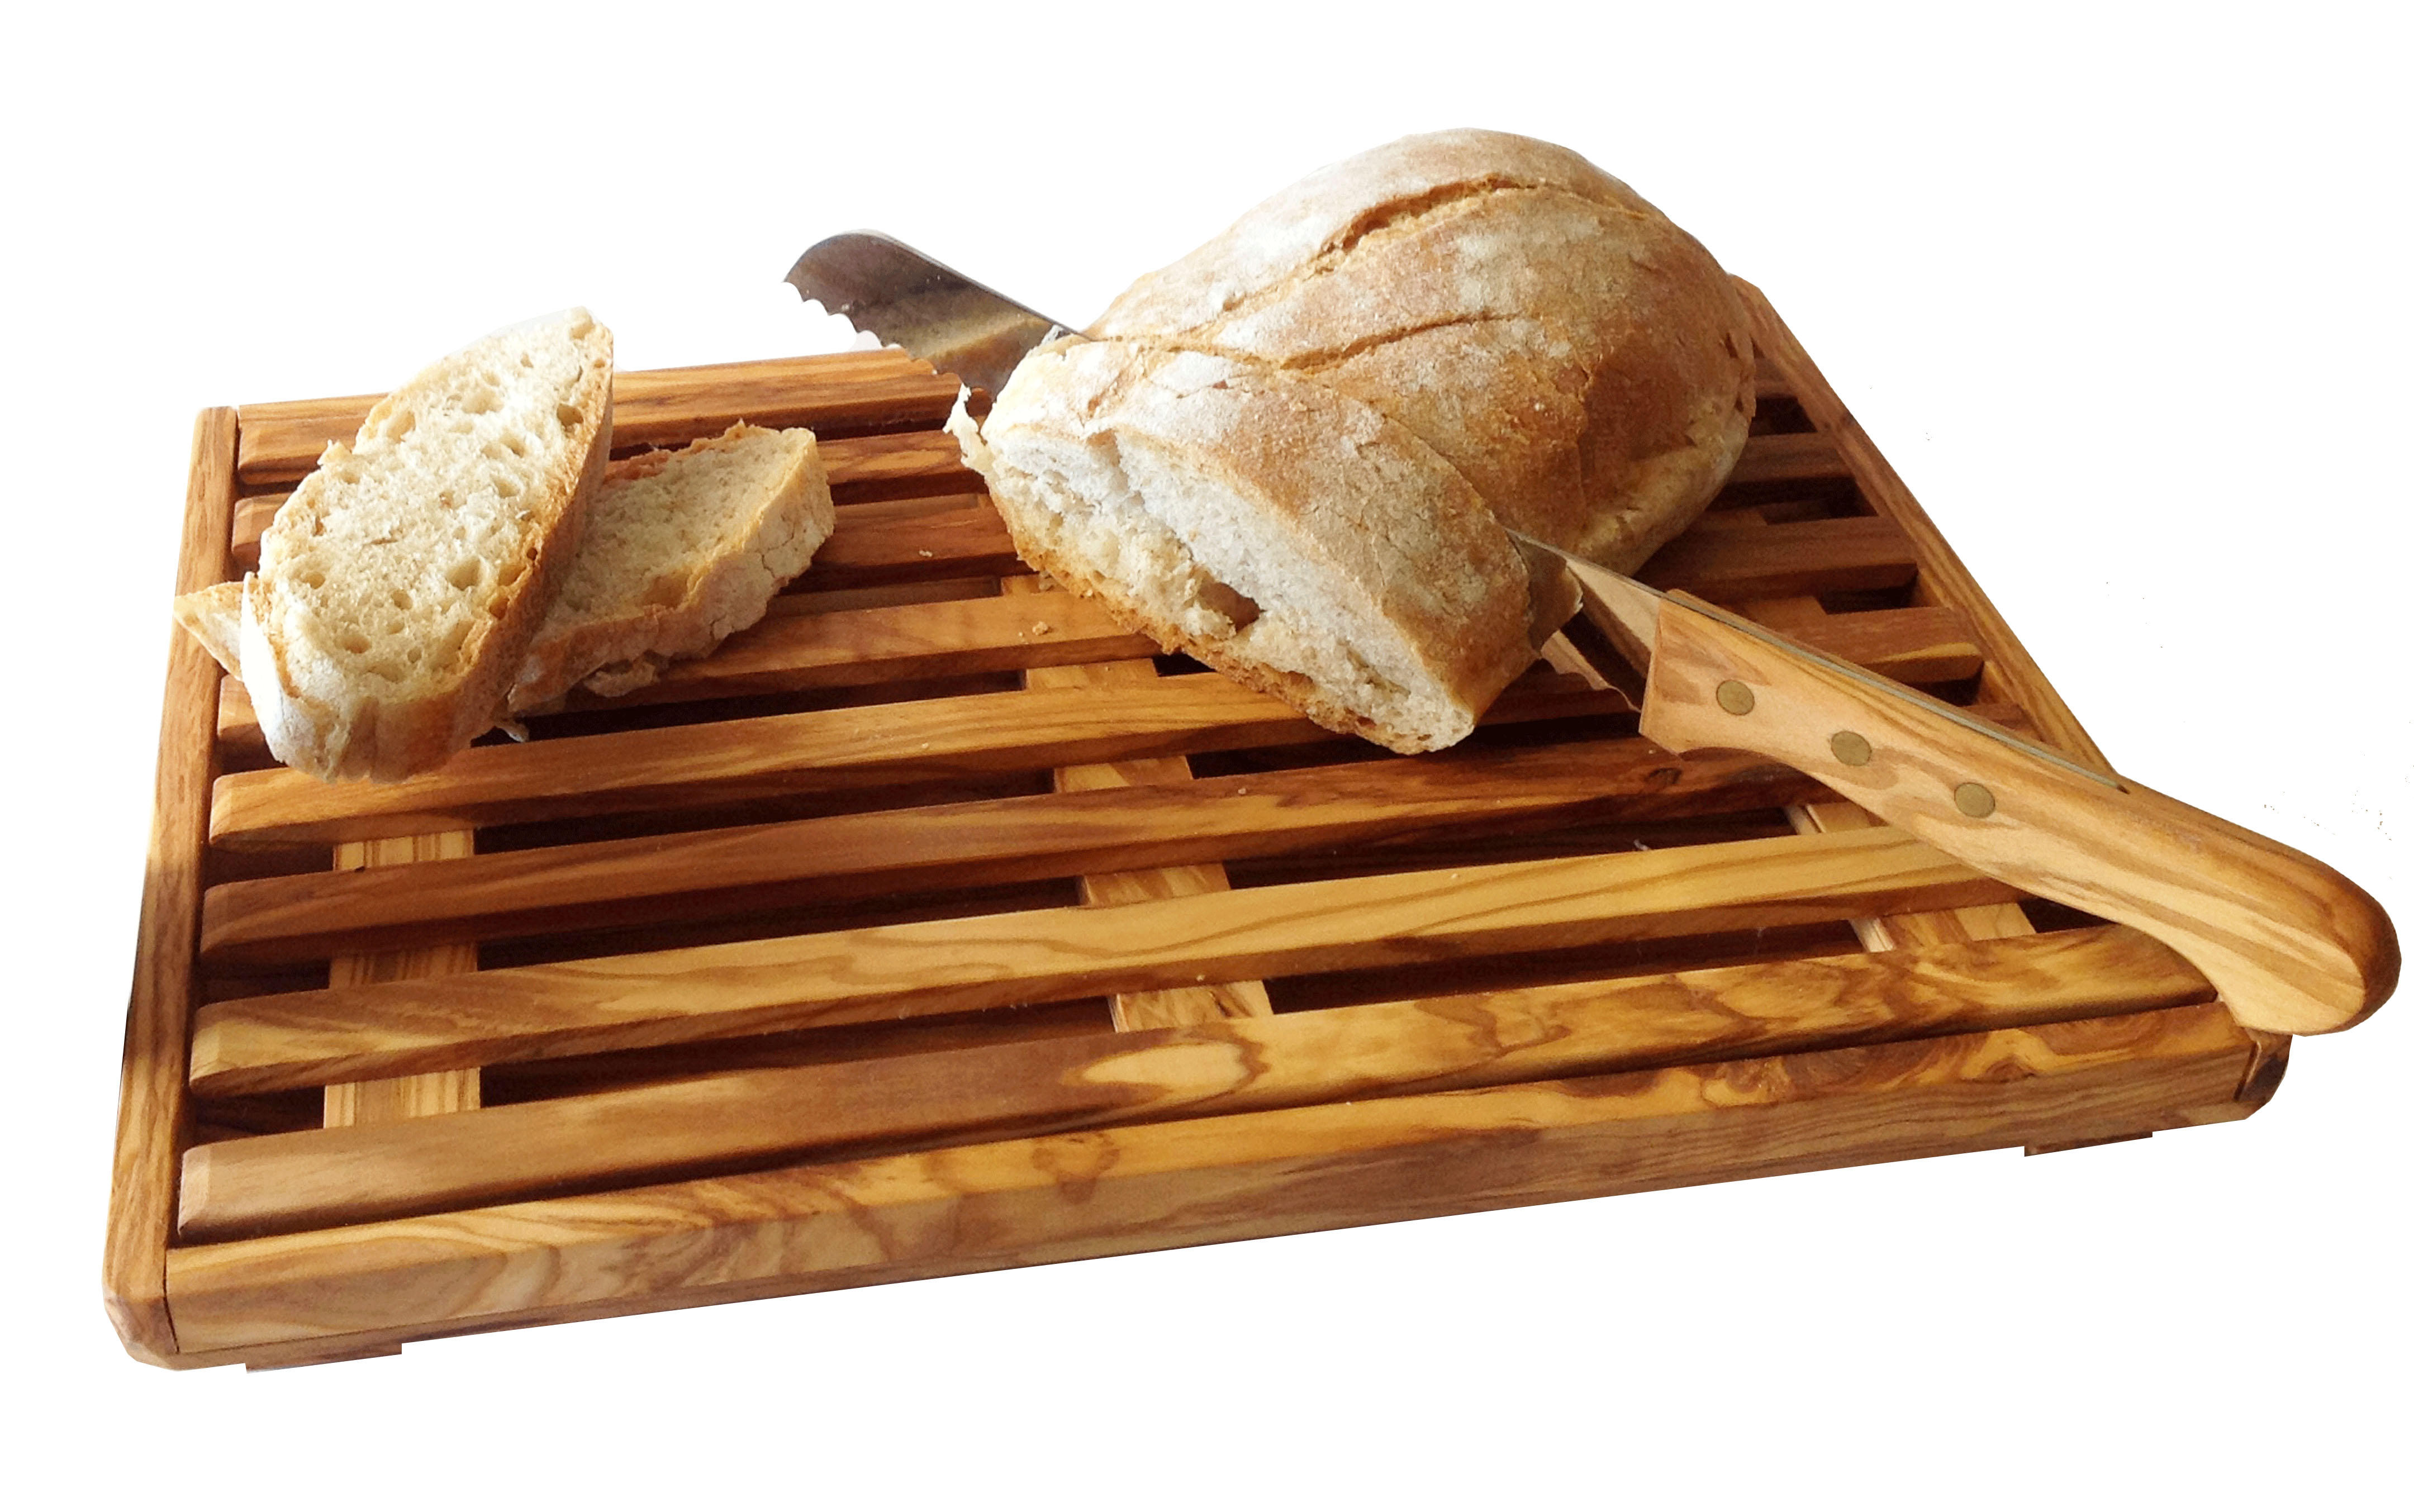 Bread cutting board